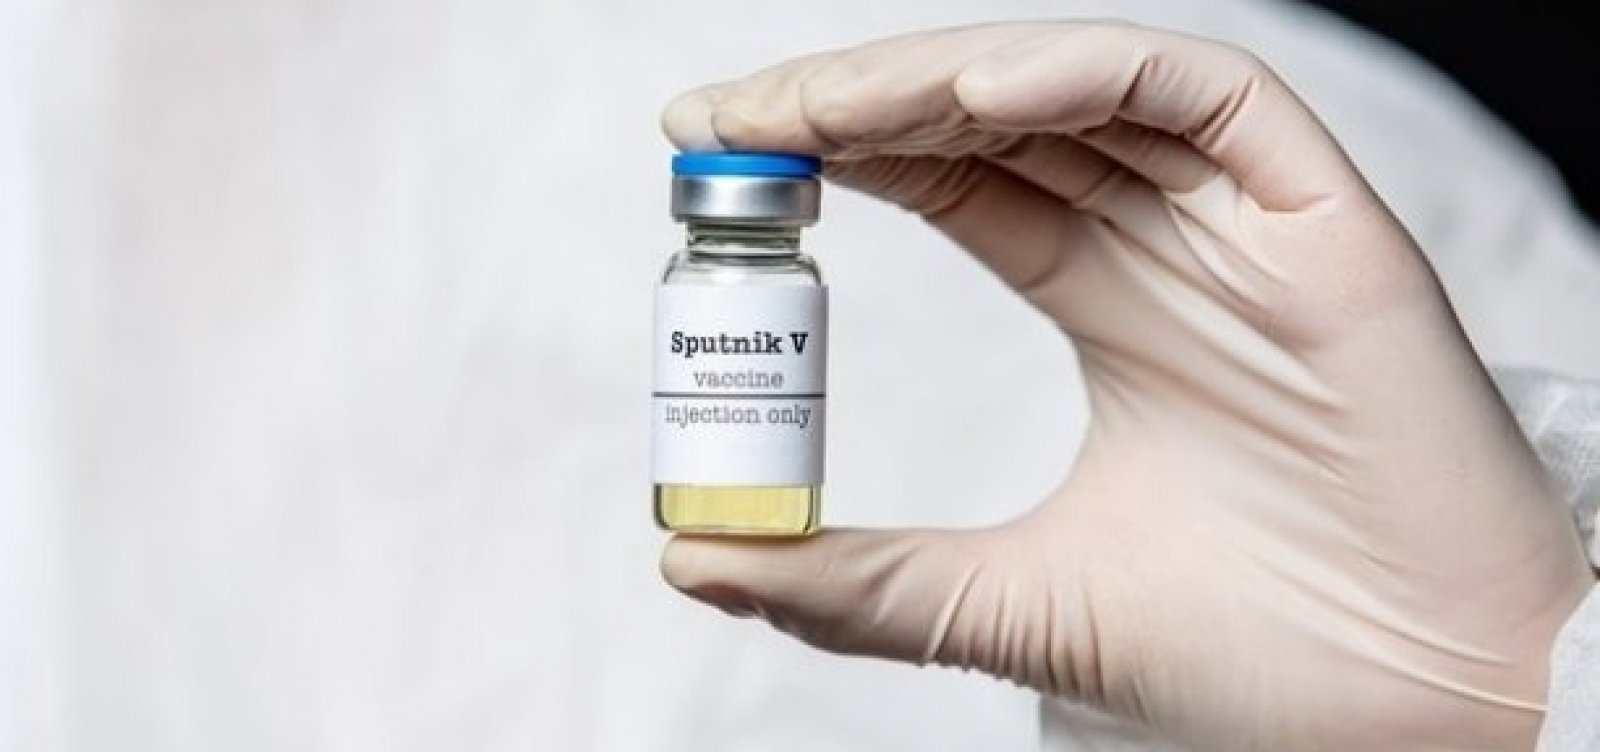 Licitações são dispensadas para compra das vacinas Covaxin e Sputnik V